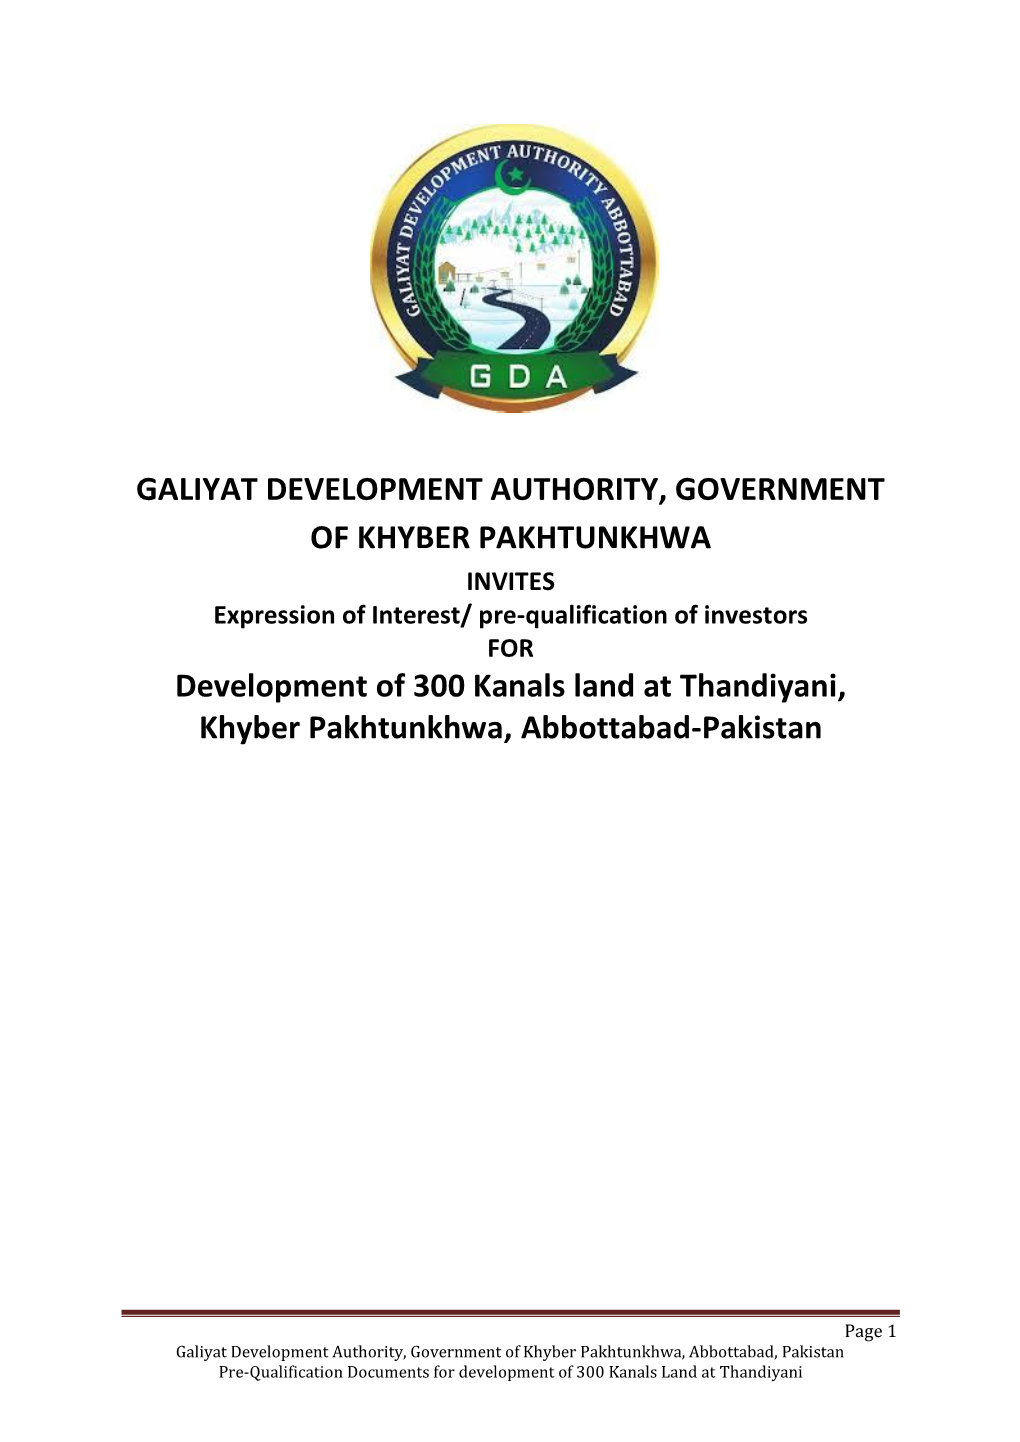 Development of 300 Kanals Land at Thandiyani, Khyber Pakhtunkhwa, Abbottabad-Pakistan